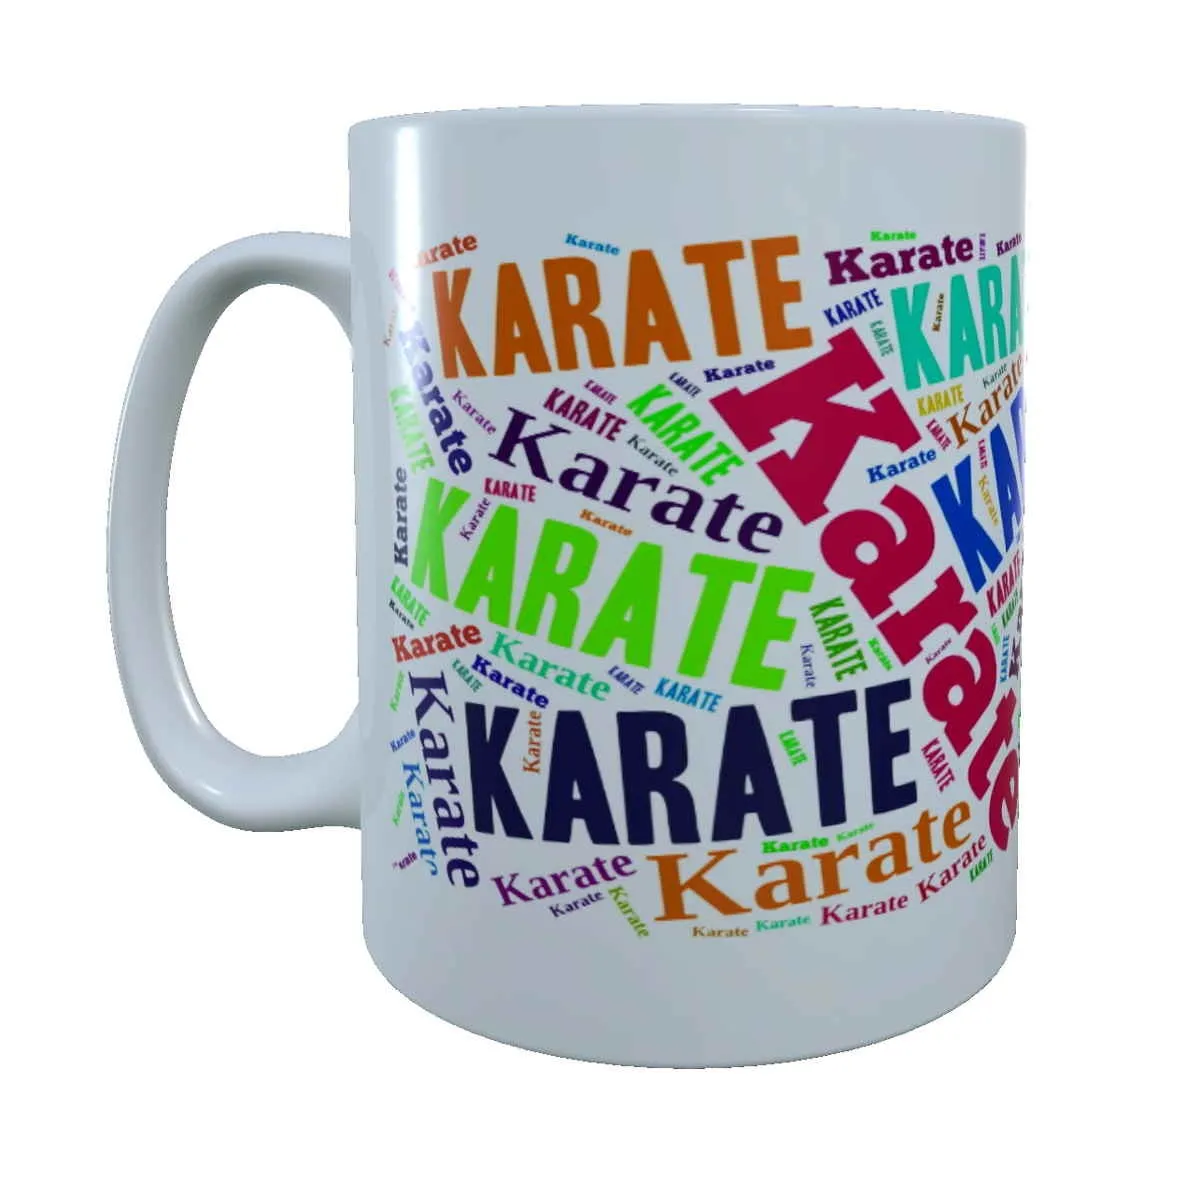 Karate mug